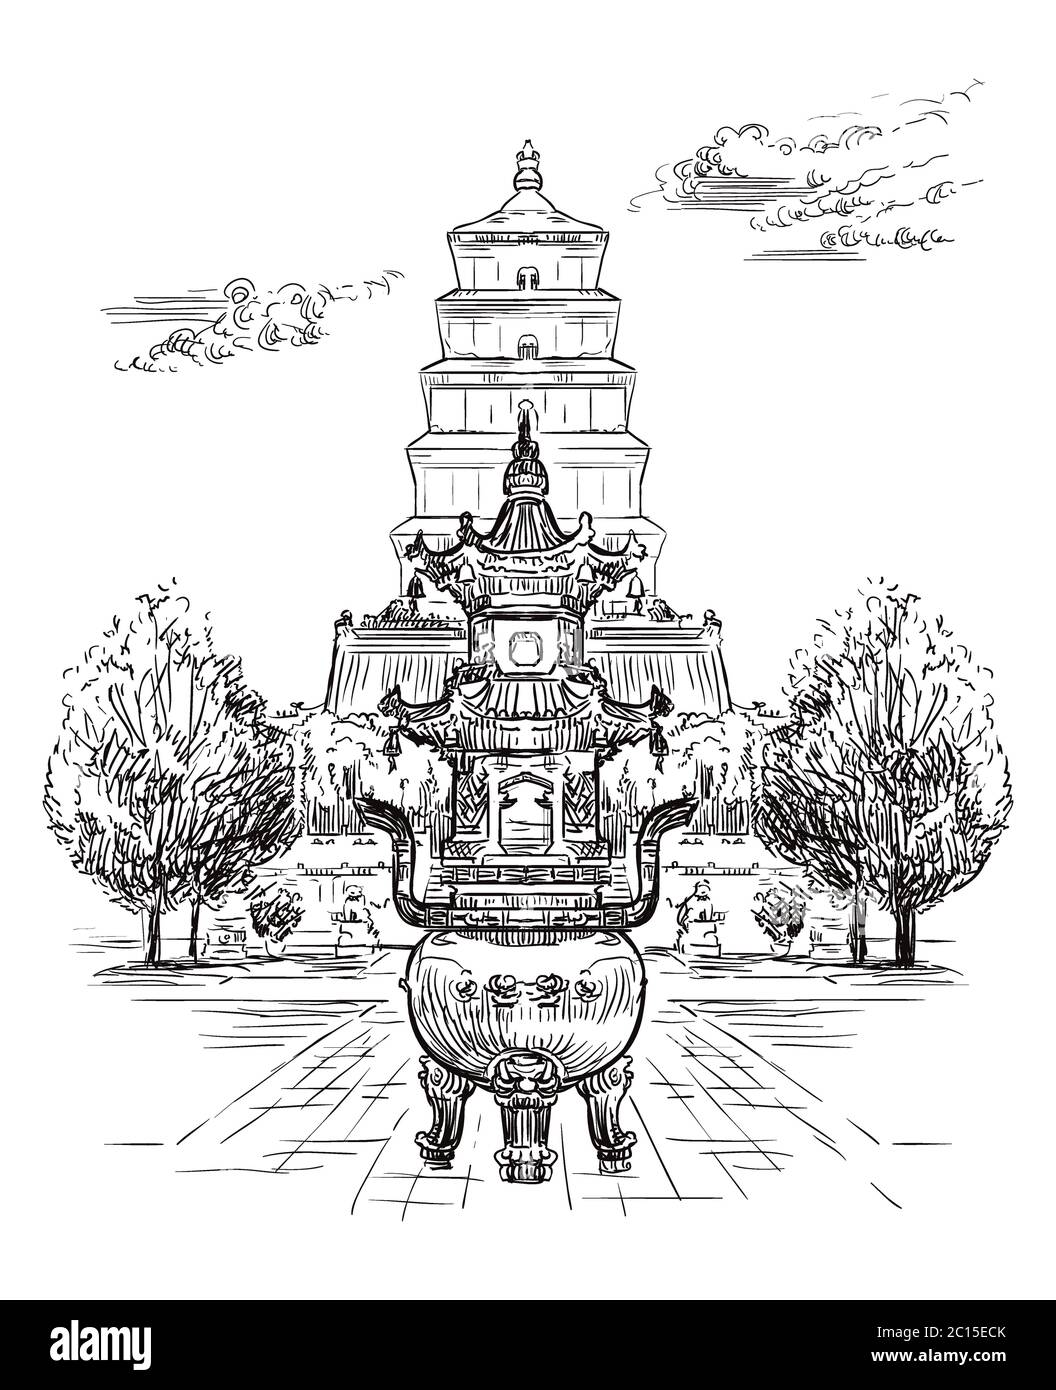 Grande pagode d'oie sauvage, pagode bouddhiste dans le sud de Xi'an, province de Shaanxi, point de repère de la Chine. L'illustration d'esquisse vectorielle dessinée à la main en noir est Illustration de Vecteur